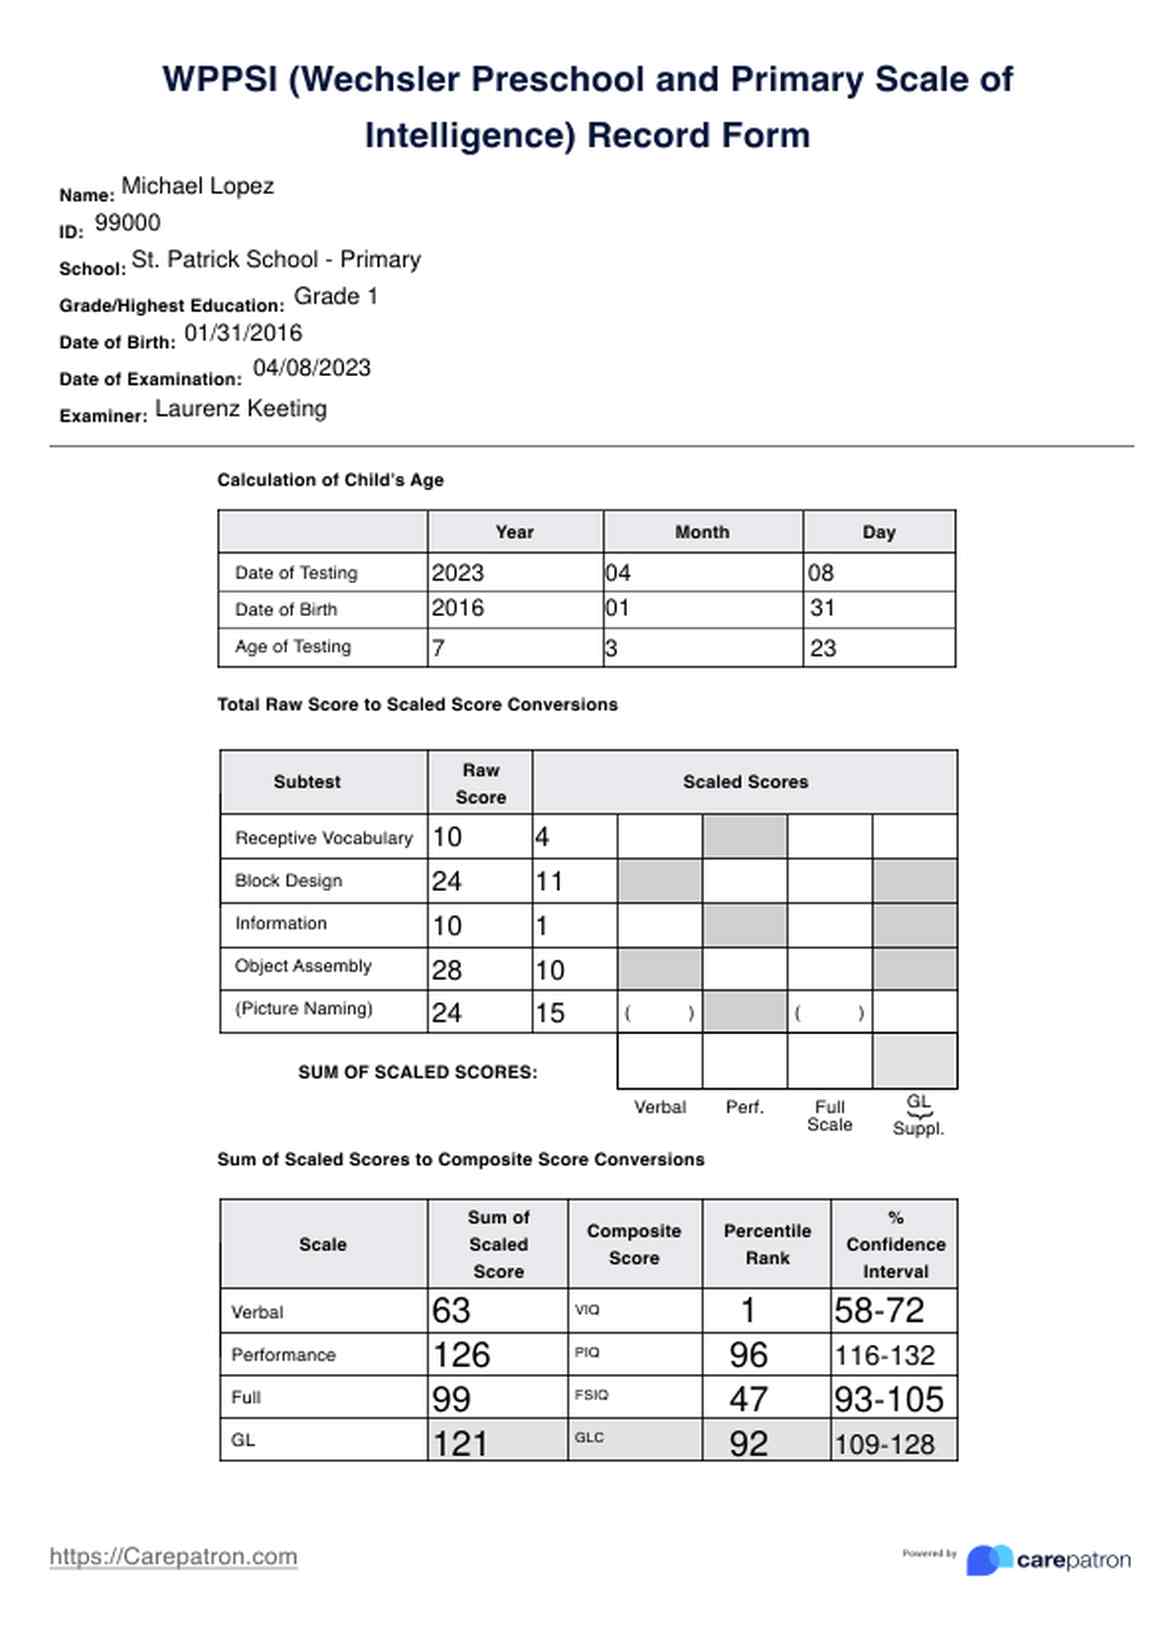 Escala de inteligencia preescolar y primaria de Wechsler (WPPSI) PDF Example